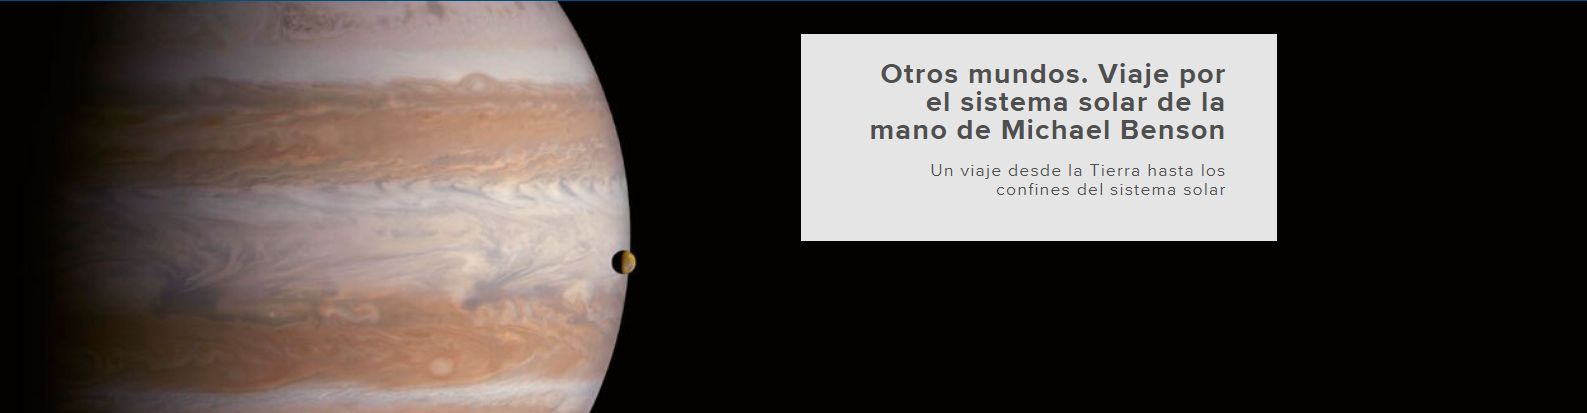 Nova exposición en Lugo sobre o Cosmos.